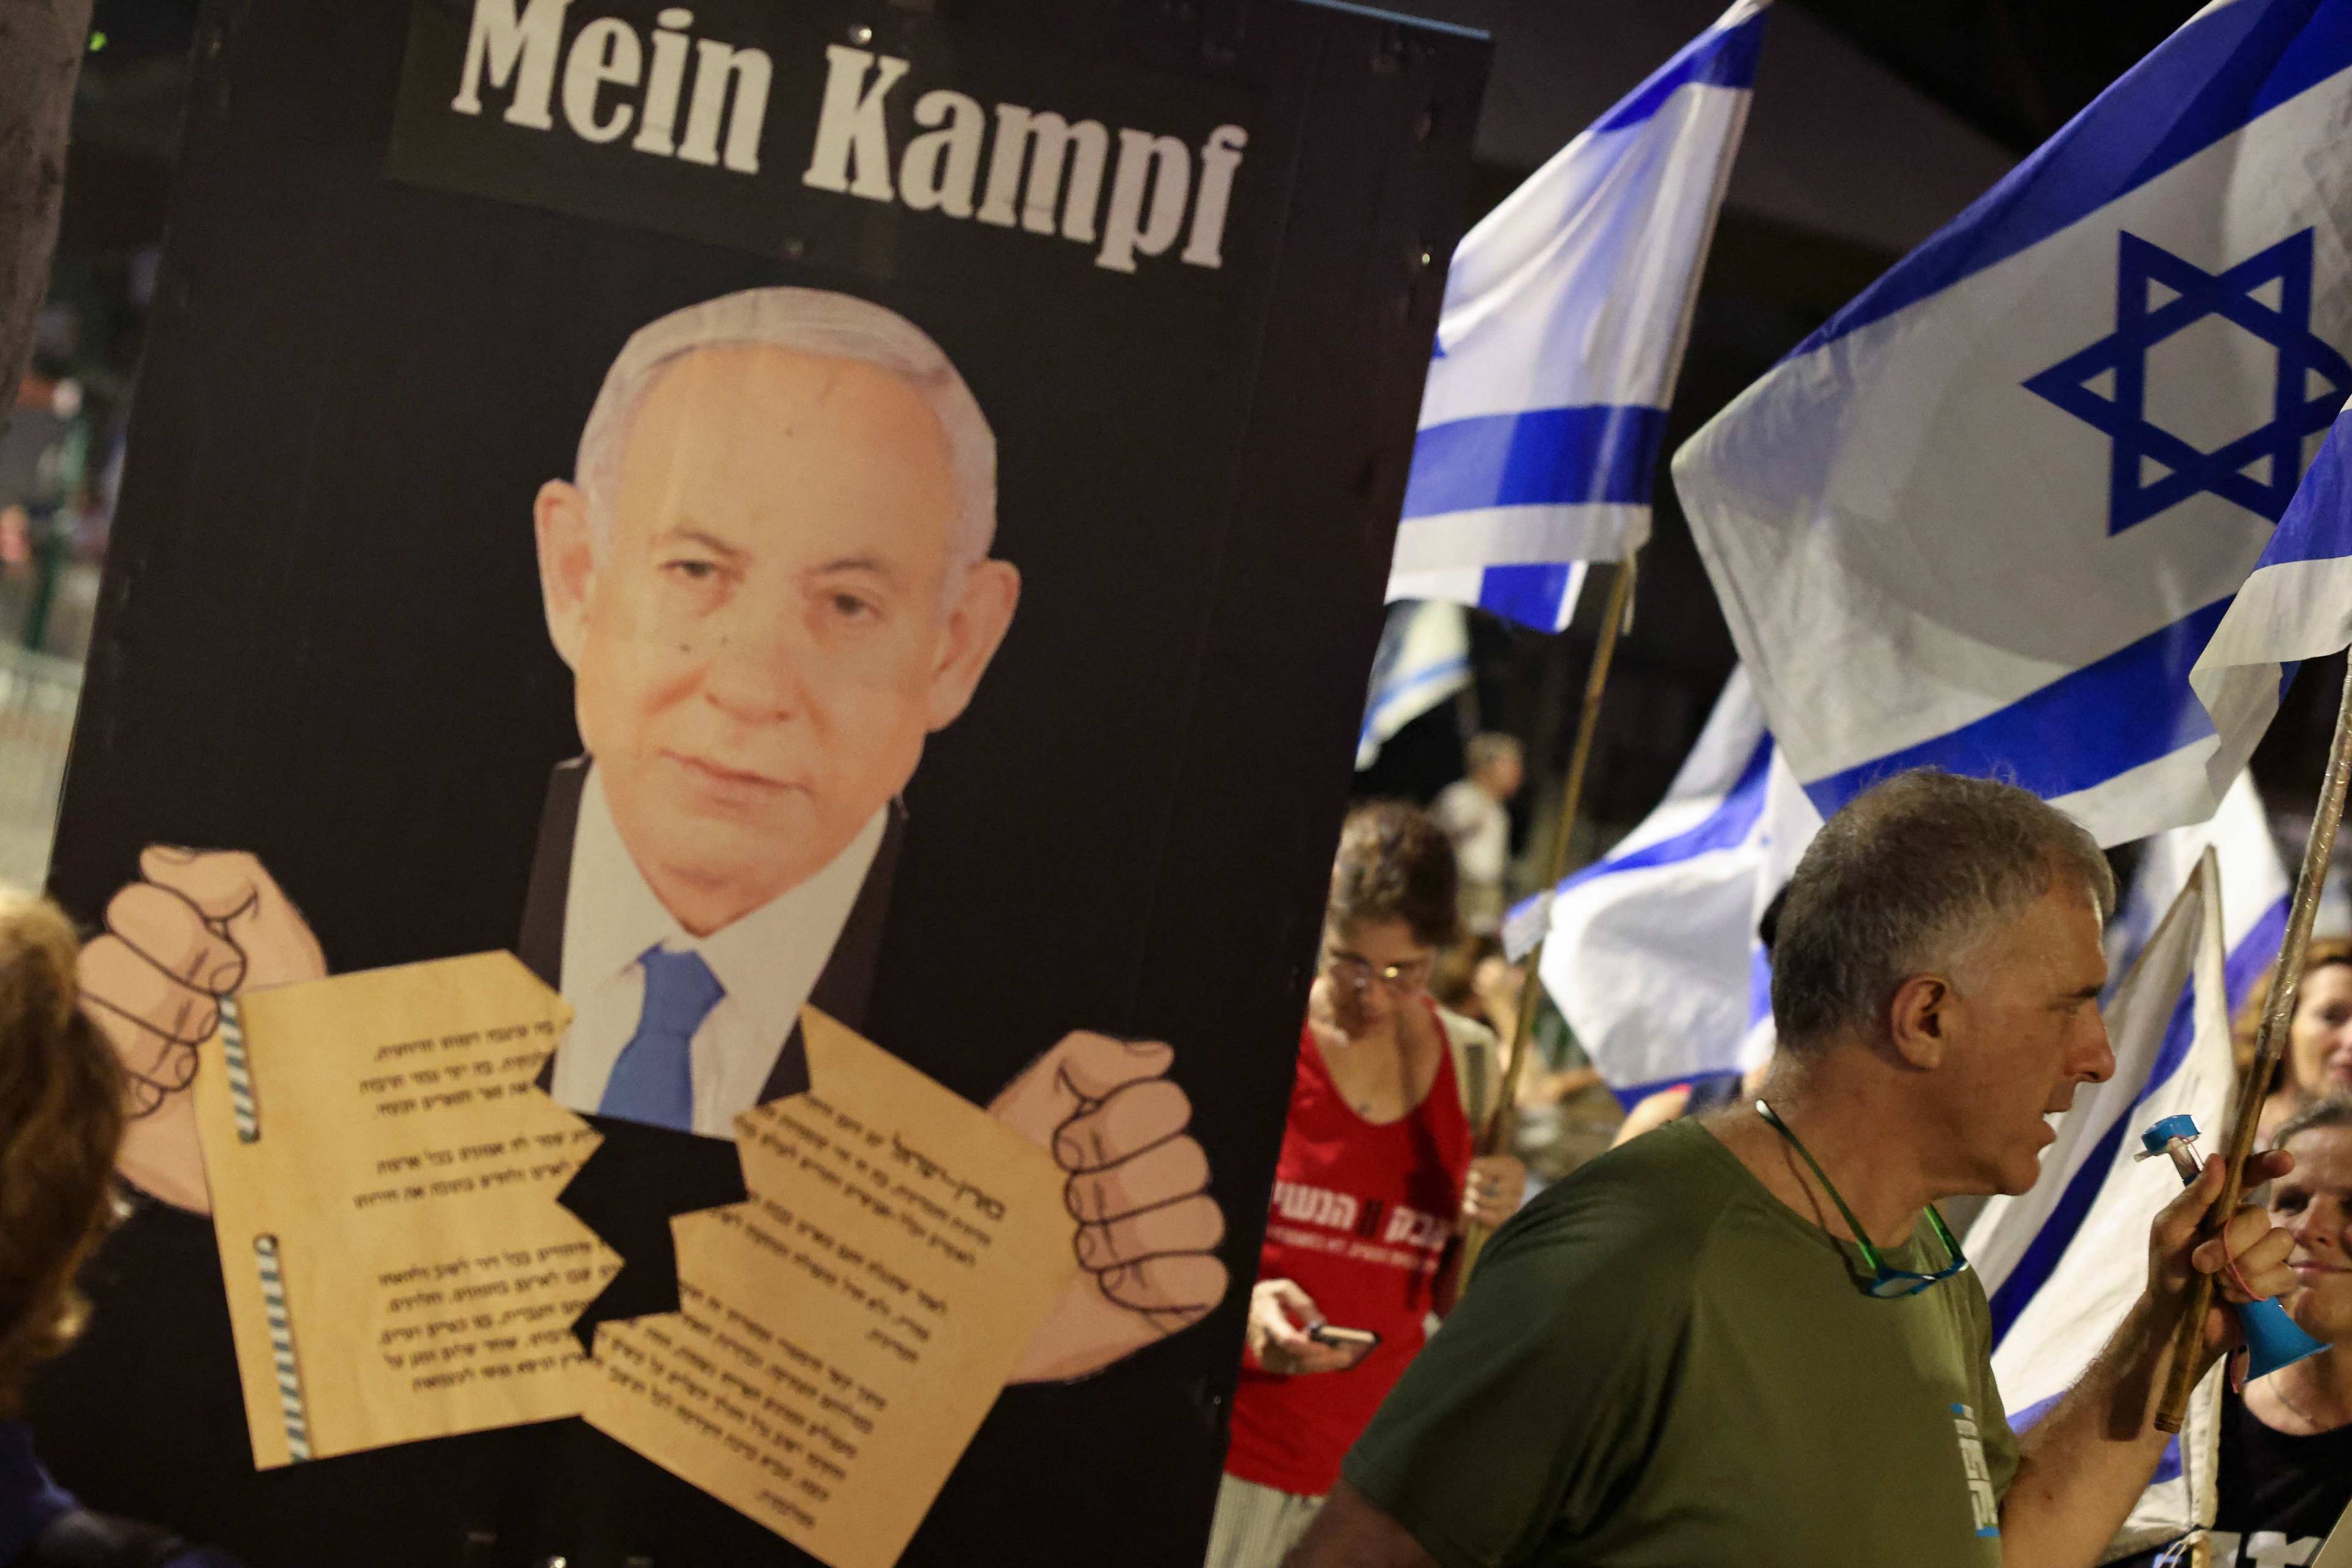 Demonstranci idą ulicą, trzymając w rękach flagi Izraela. Na pierwszym planie plakat z podobizną Benjamina Netanjahu, który rwie w rękach dokument w języku hebrajskim. Nad nim napis Mein Kampf